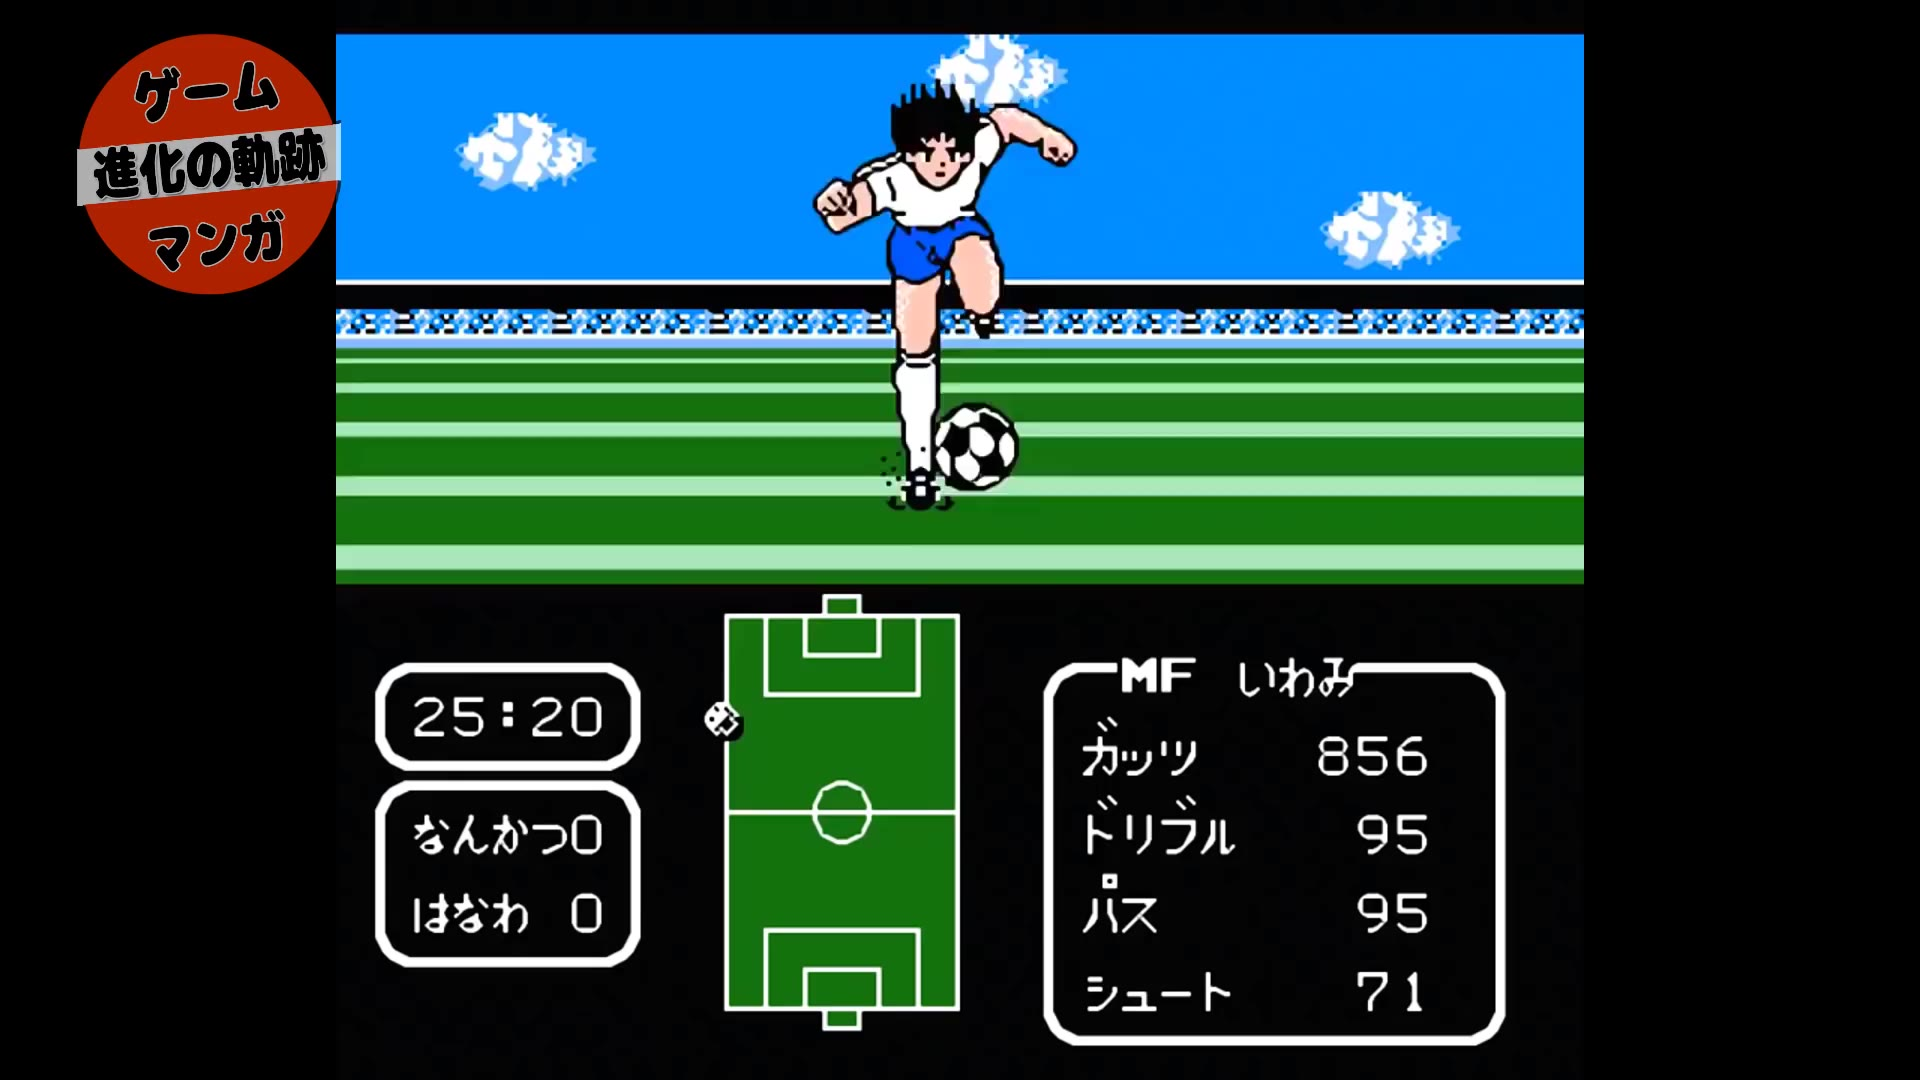 足球小将单机游戏安卓电脑版单机游戏下载大全中文版免费下载